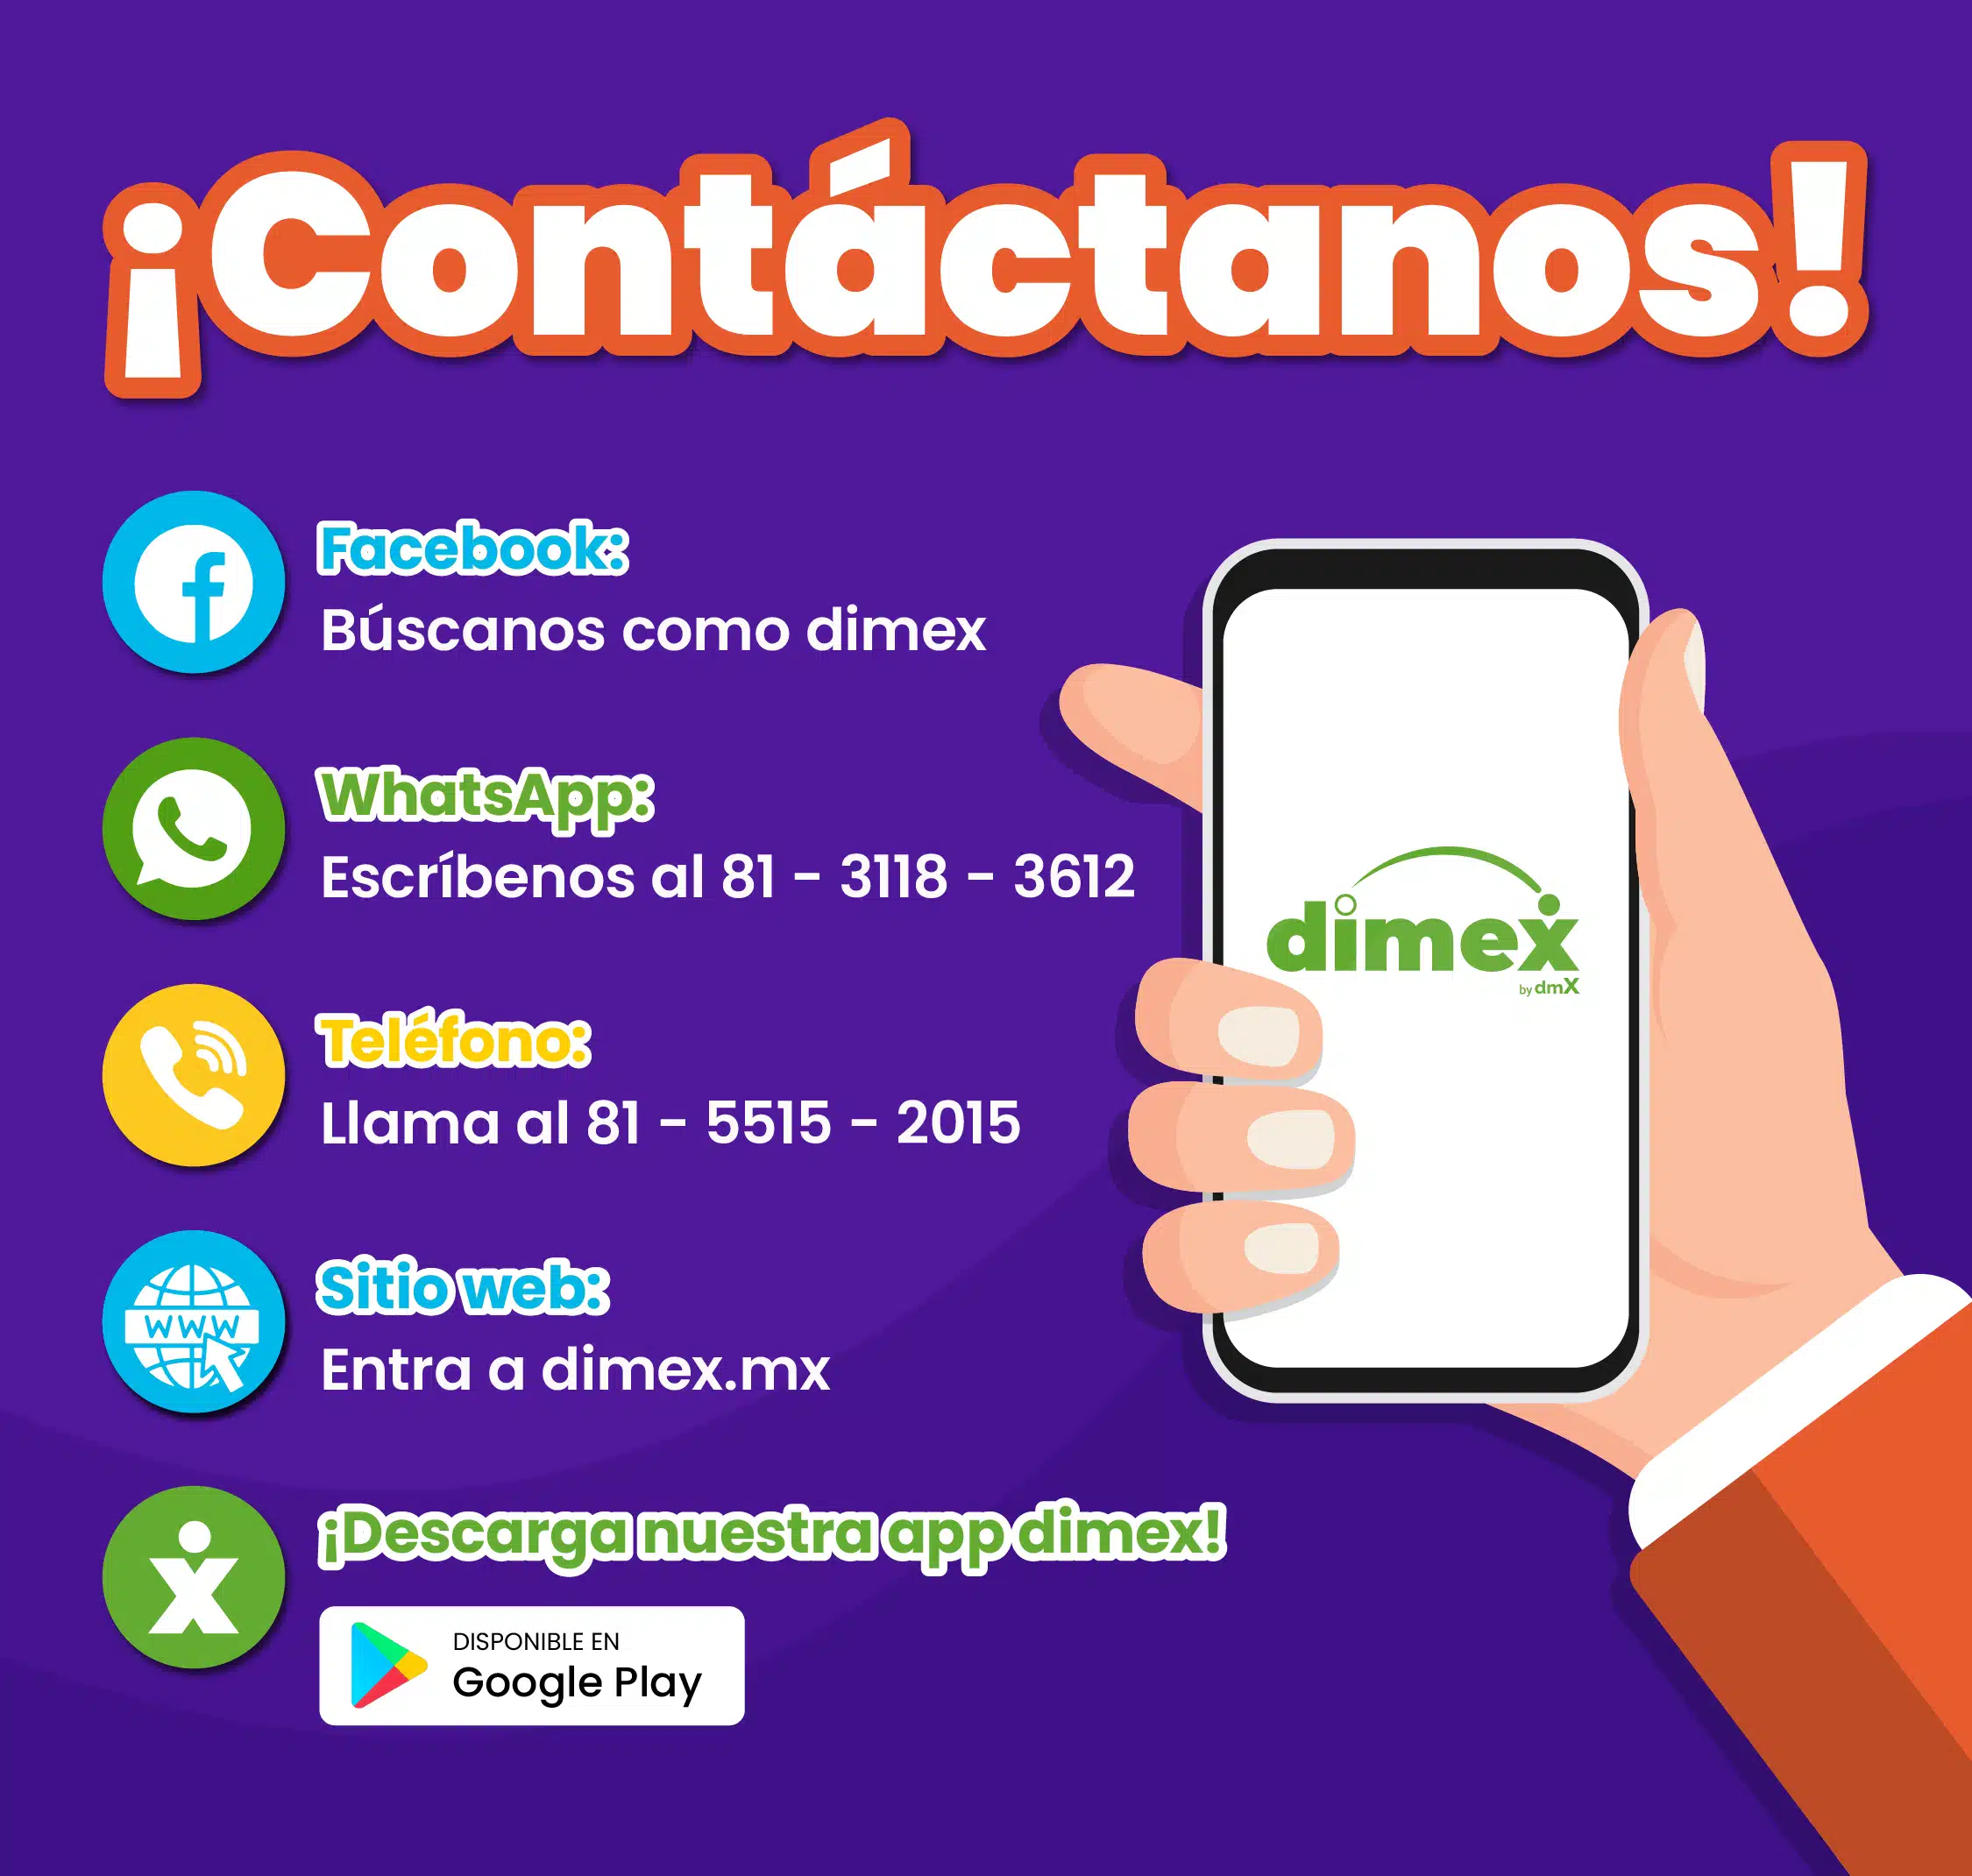 ¿Buscas préstamos en línea urgentes? Contacta con Dimex, tu solución ideal. Olvídate de contar con un aval y demás requisitos innecesarios.